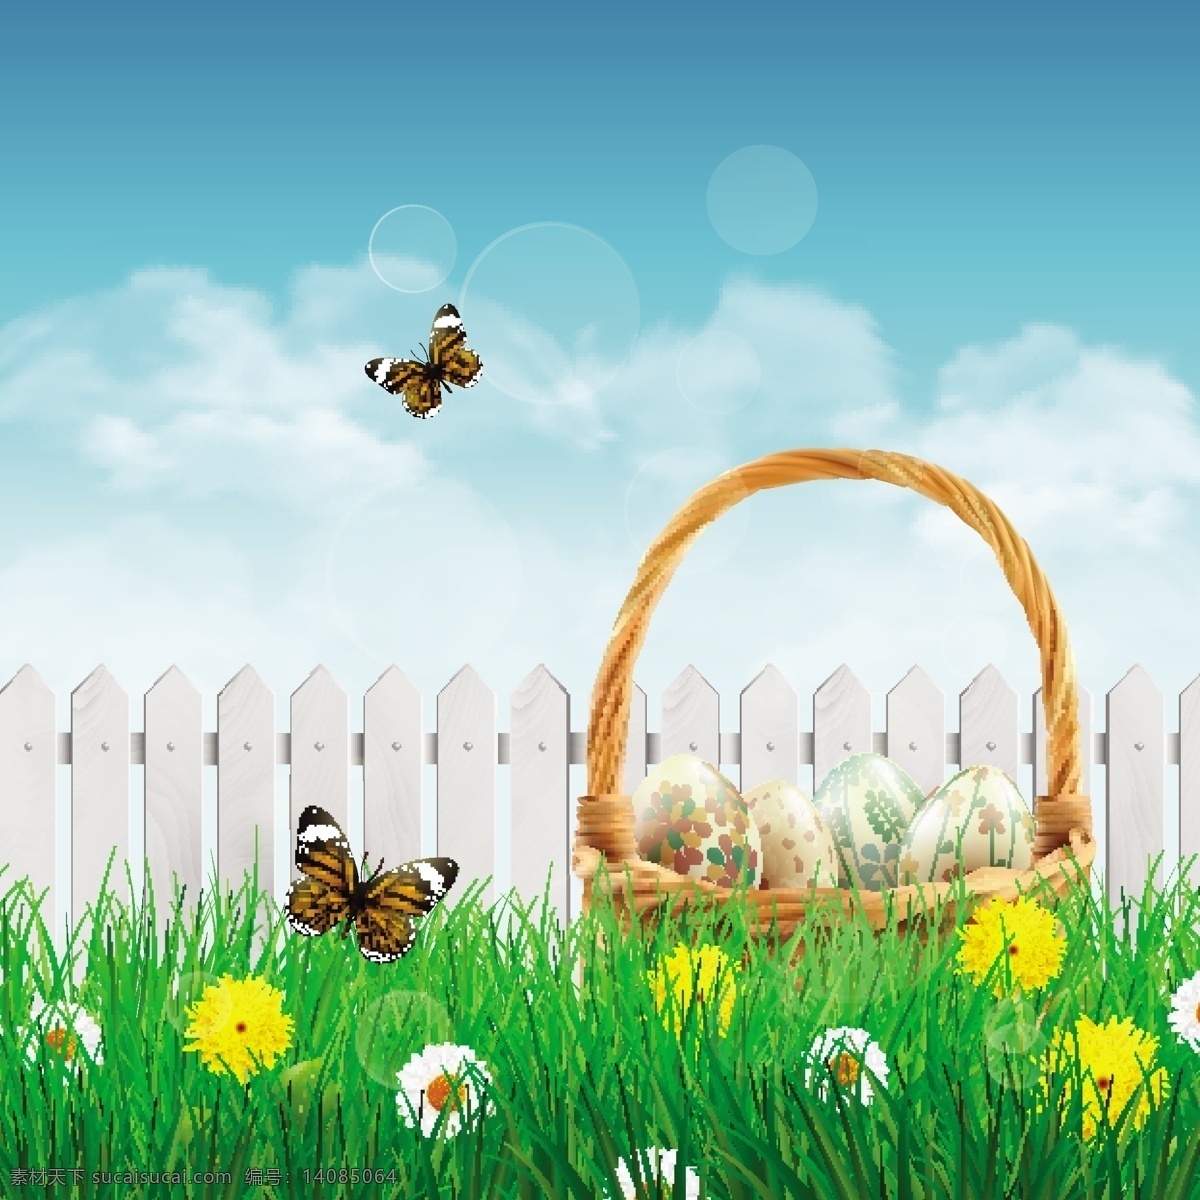 复活节图片 复活节 手绘 鸡蛋 彩蛋 兔子 卡通 节日素材 复活节背景